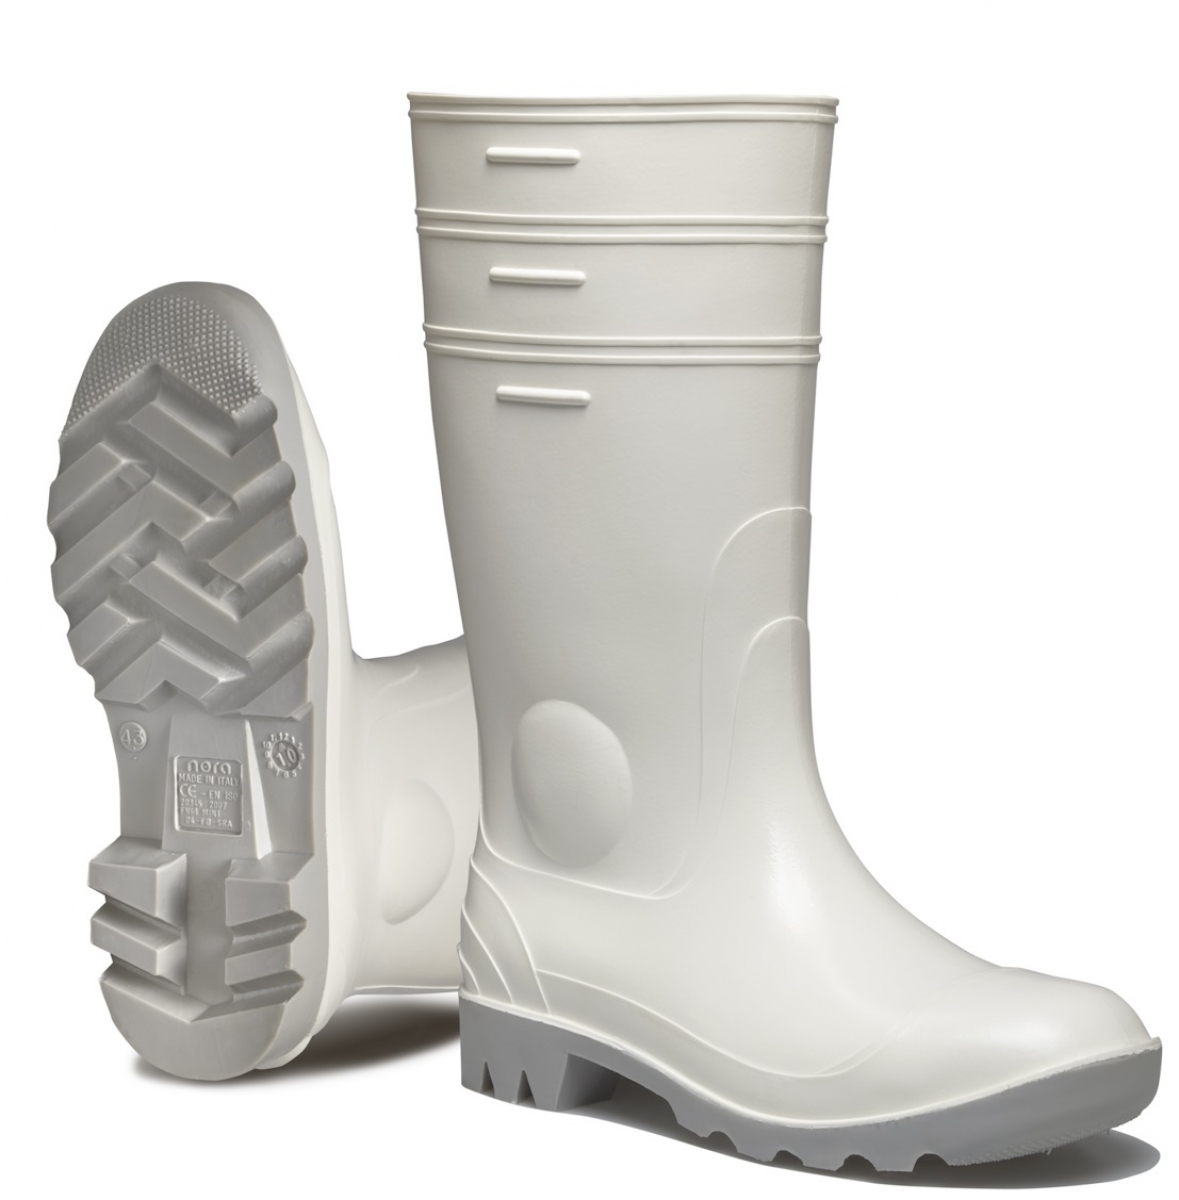 SPIRALE-NORA-Footwear, S4-PVC-Arbeits-Sicherheits-Gummi-Stiefel, Safron, wei